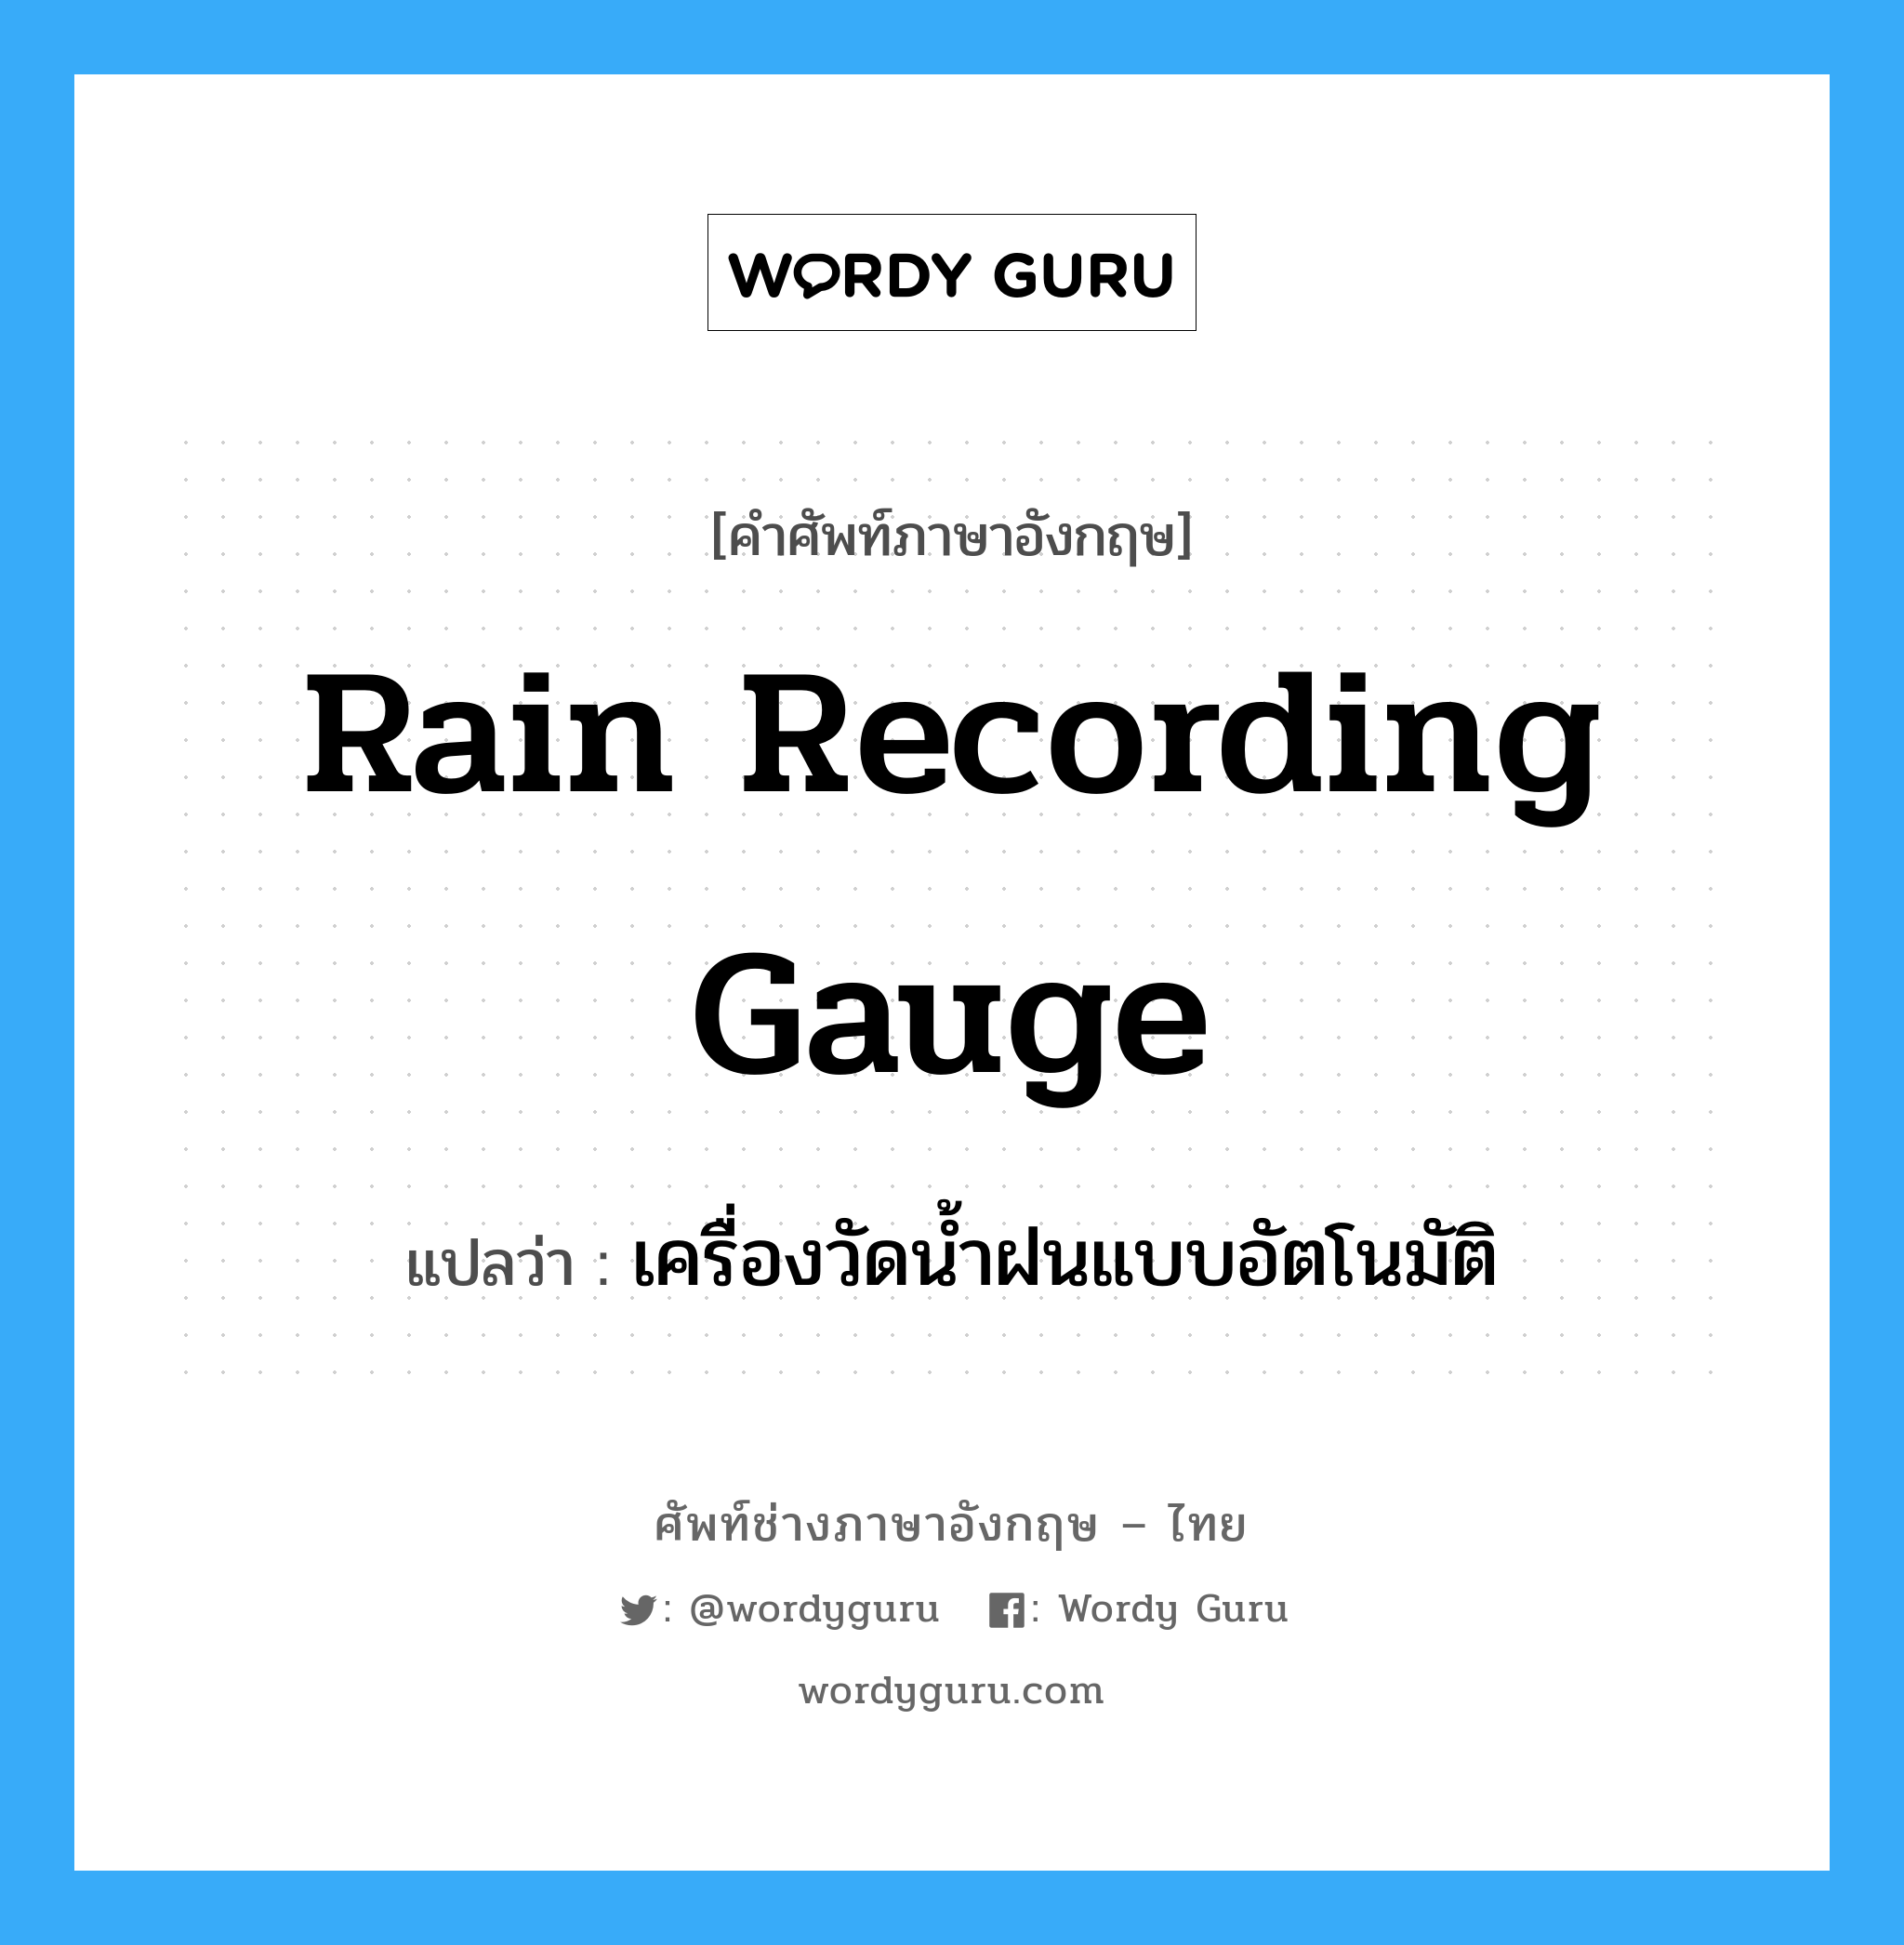 เครื่องวัดน้ำฝนแบบอัตโนมัติ ภาษาอังกฤษ?, คำศัพท์ช่างภาษาอังกฤษ - ไทย เครื่องวัดน้ำฝนแบบอัตโนมัติ คำศัพท์ภาษาอังกฤษ เครื่องวัดน้ำฝนแบบอัตโนมัติ แปลว่า rain recording gauge